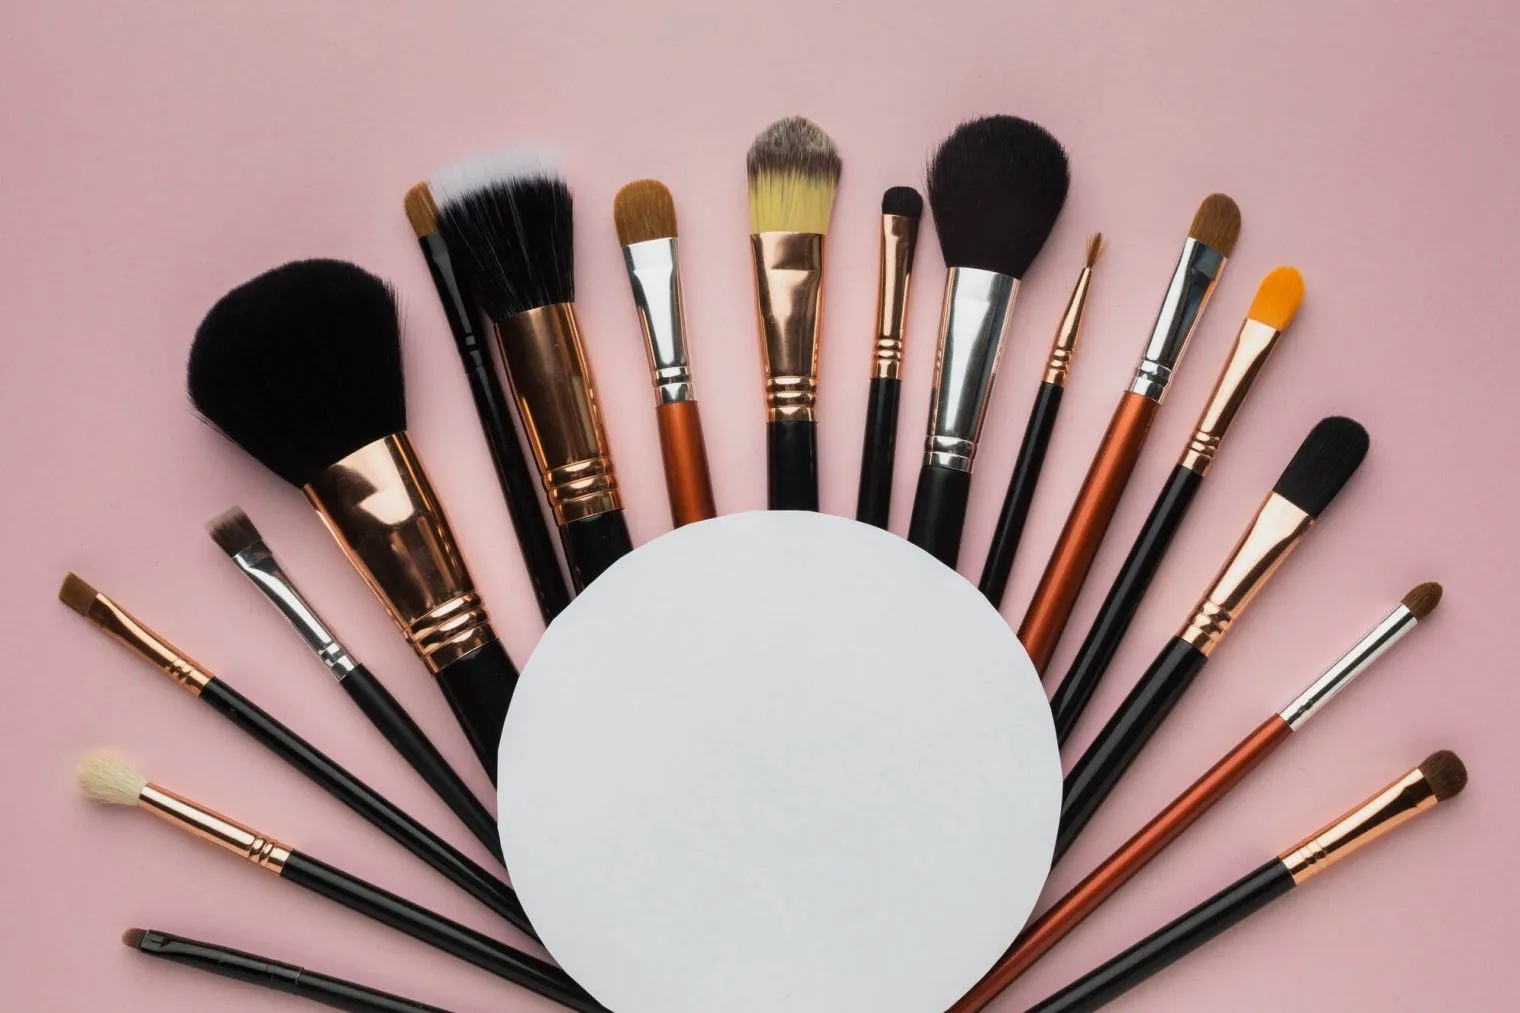 Pentingnya Membersihkan Alat Makeup untuk Menjaga Kebersihan dan Kesehatan Kulit